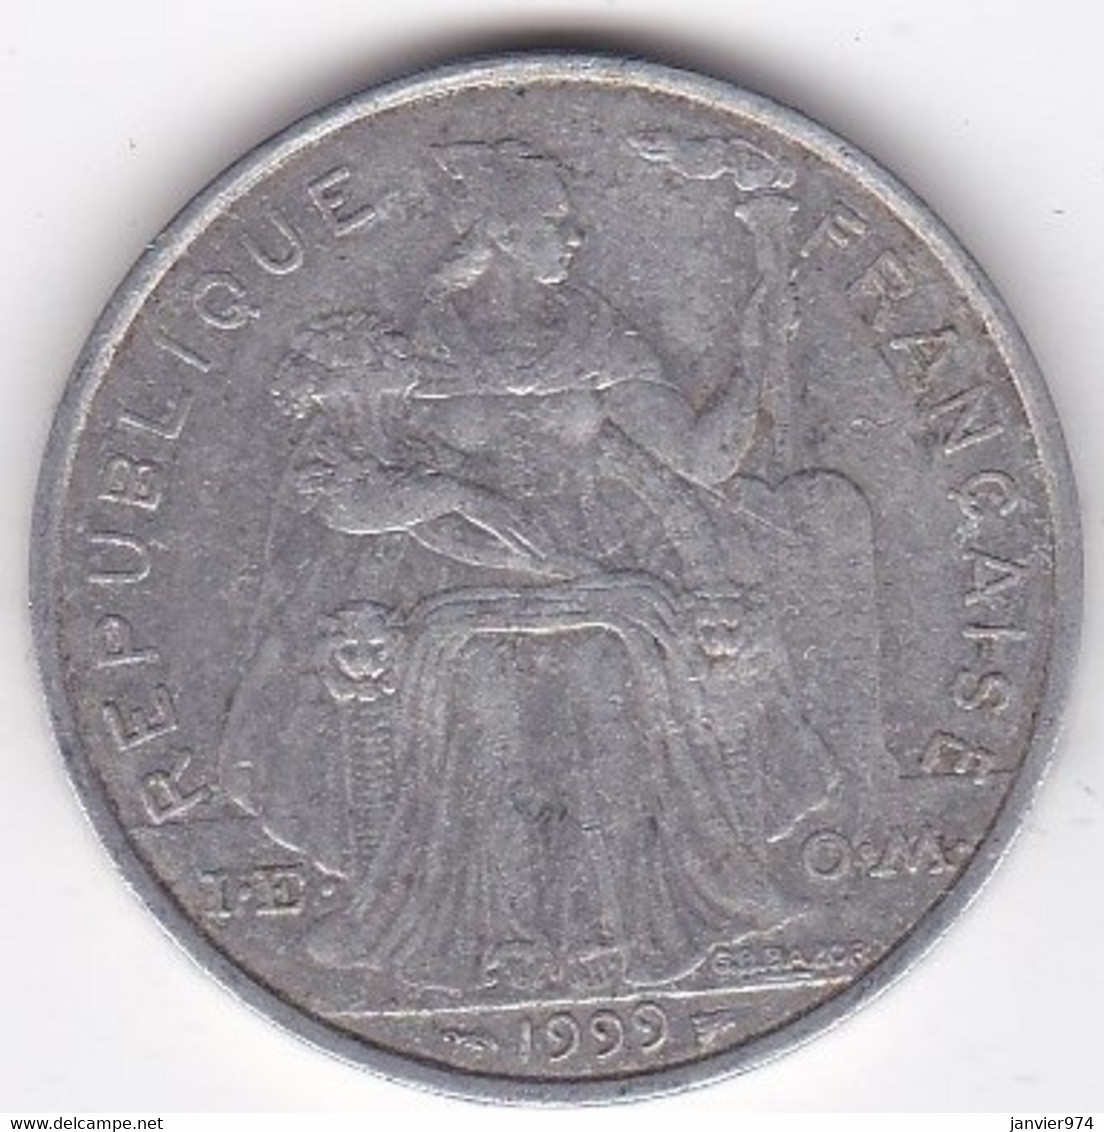 Polynésie Française . 5 Francs 1999, En Aluminium - Frans-Polynesië